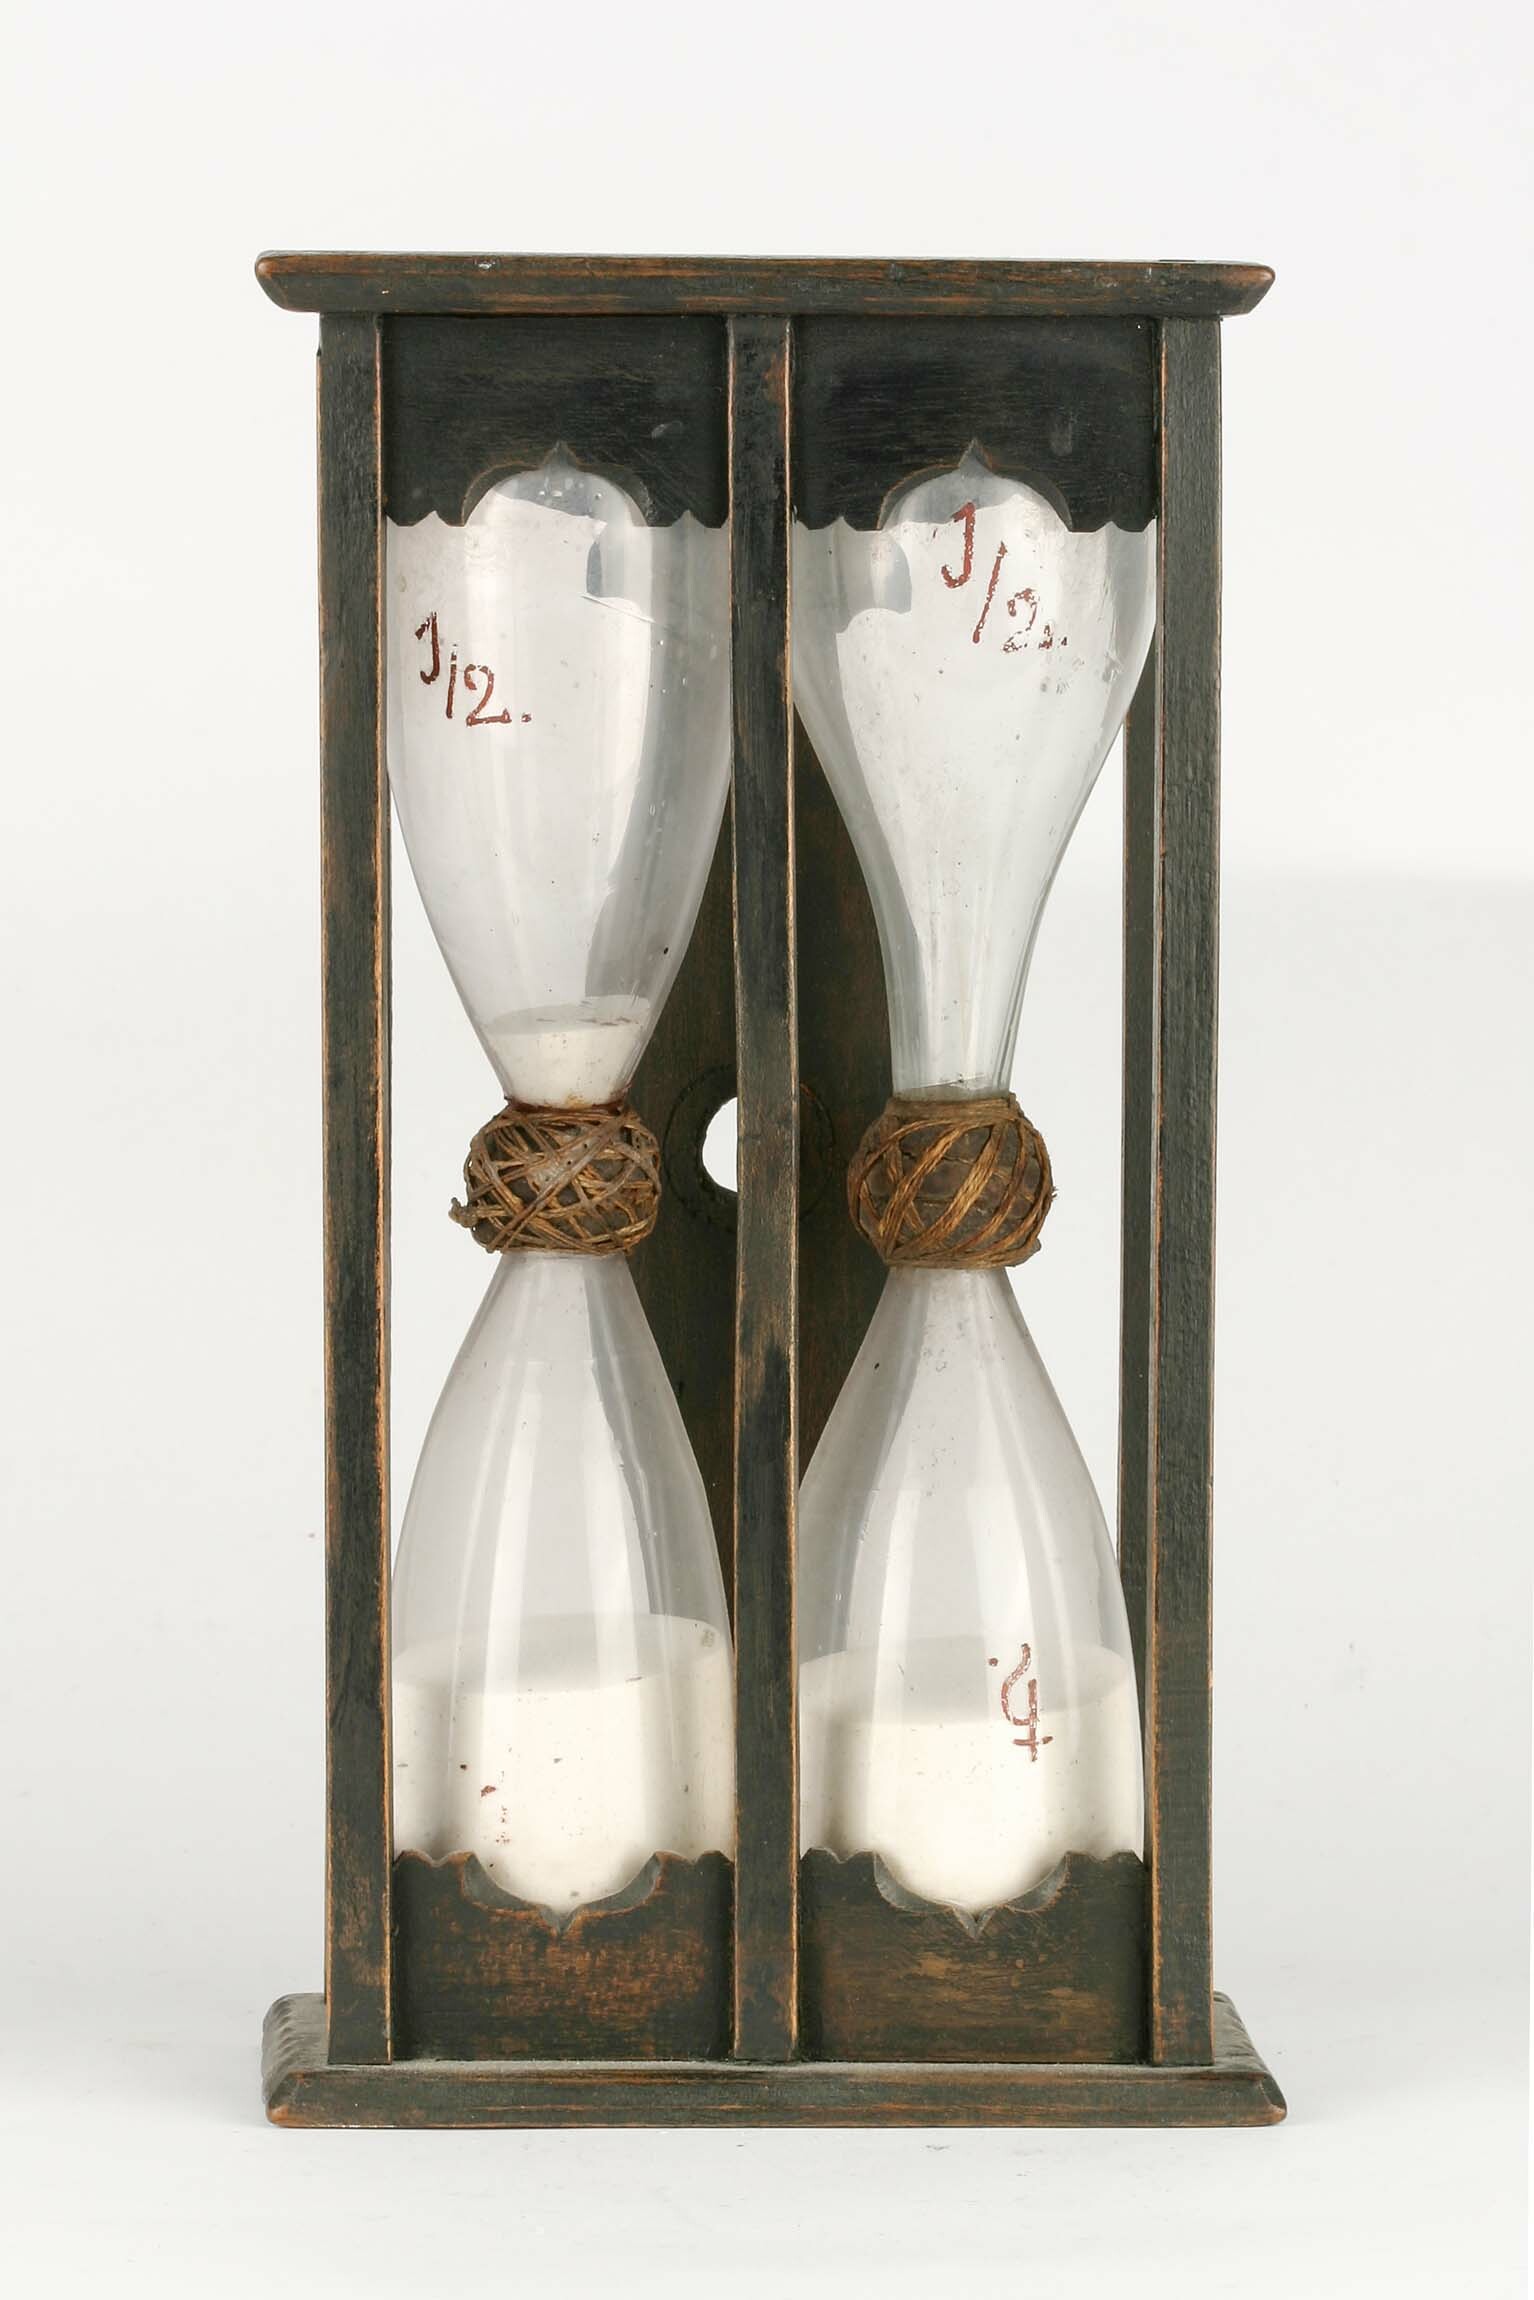 Sanduhr, wohl 18. Jahrhundert (Deutsches Uhrenmuseum CC BY-SA)